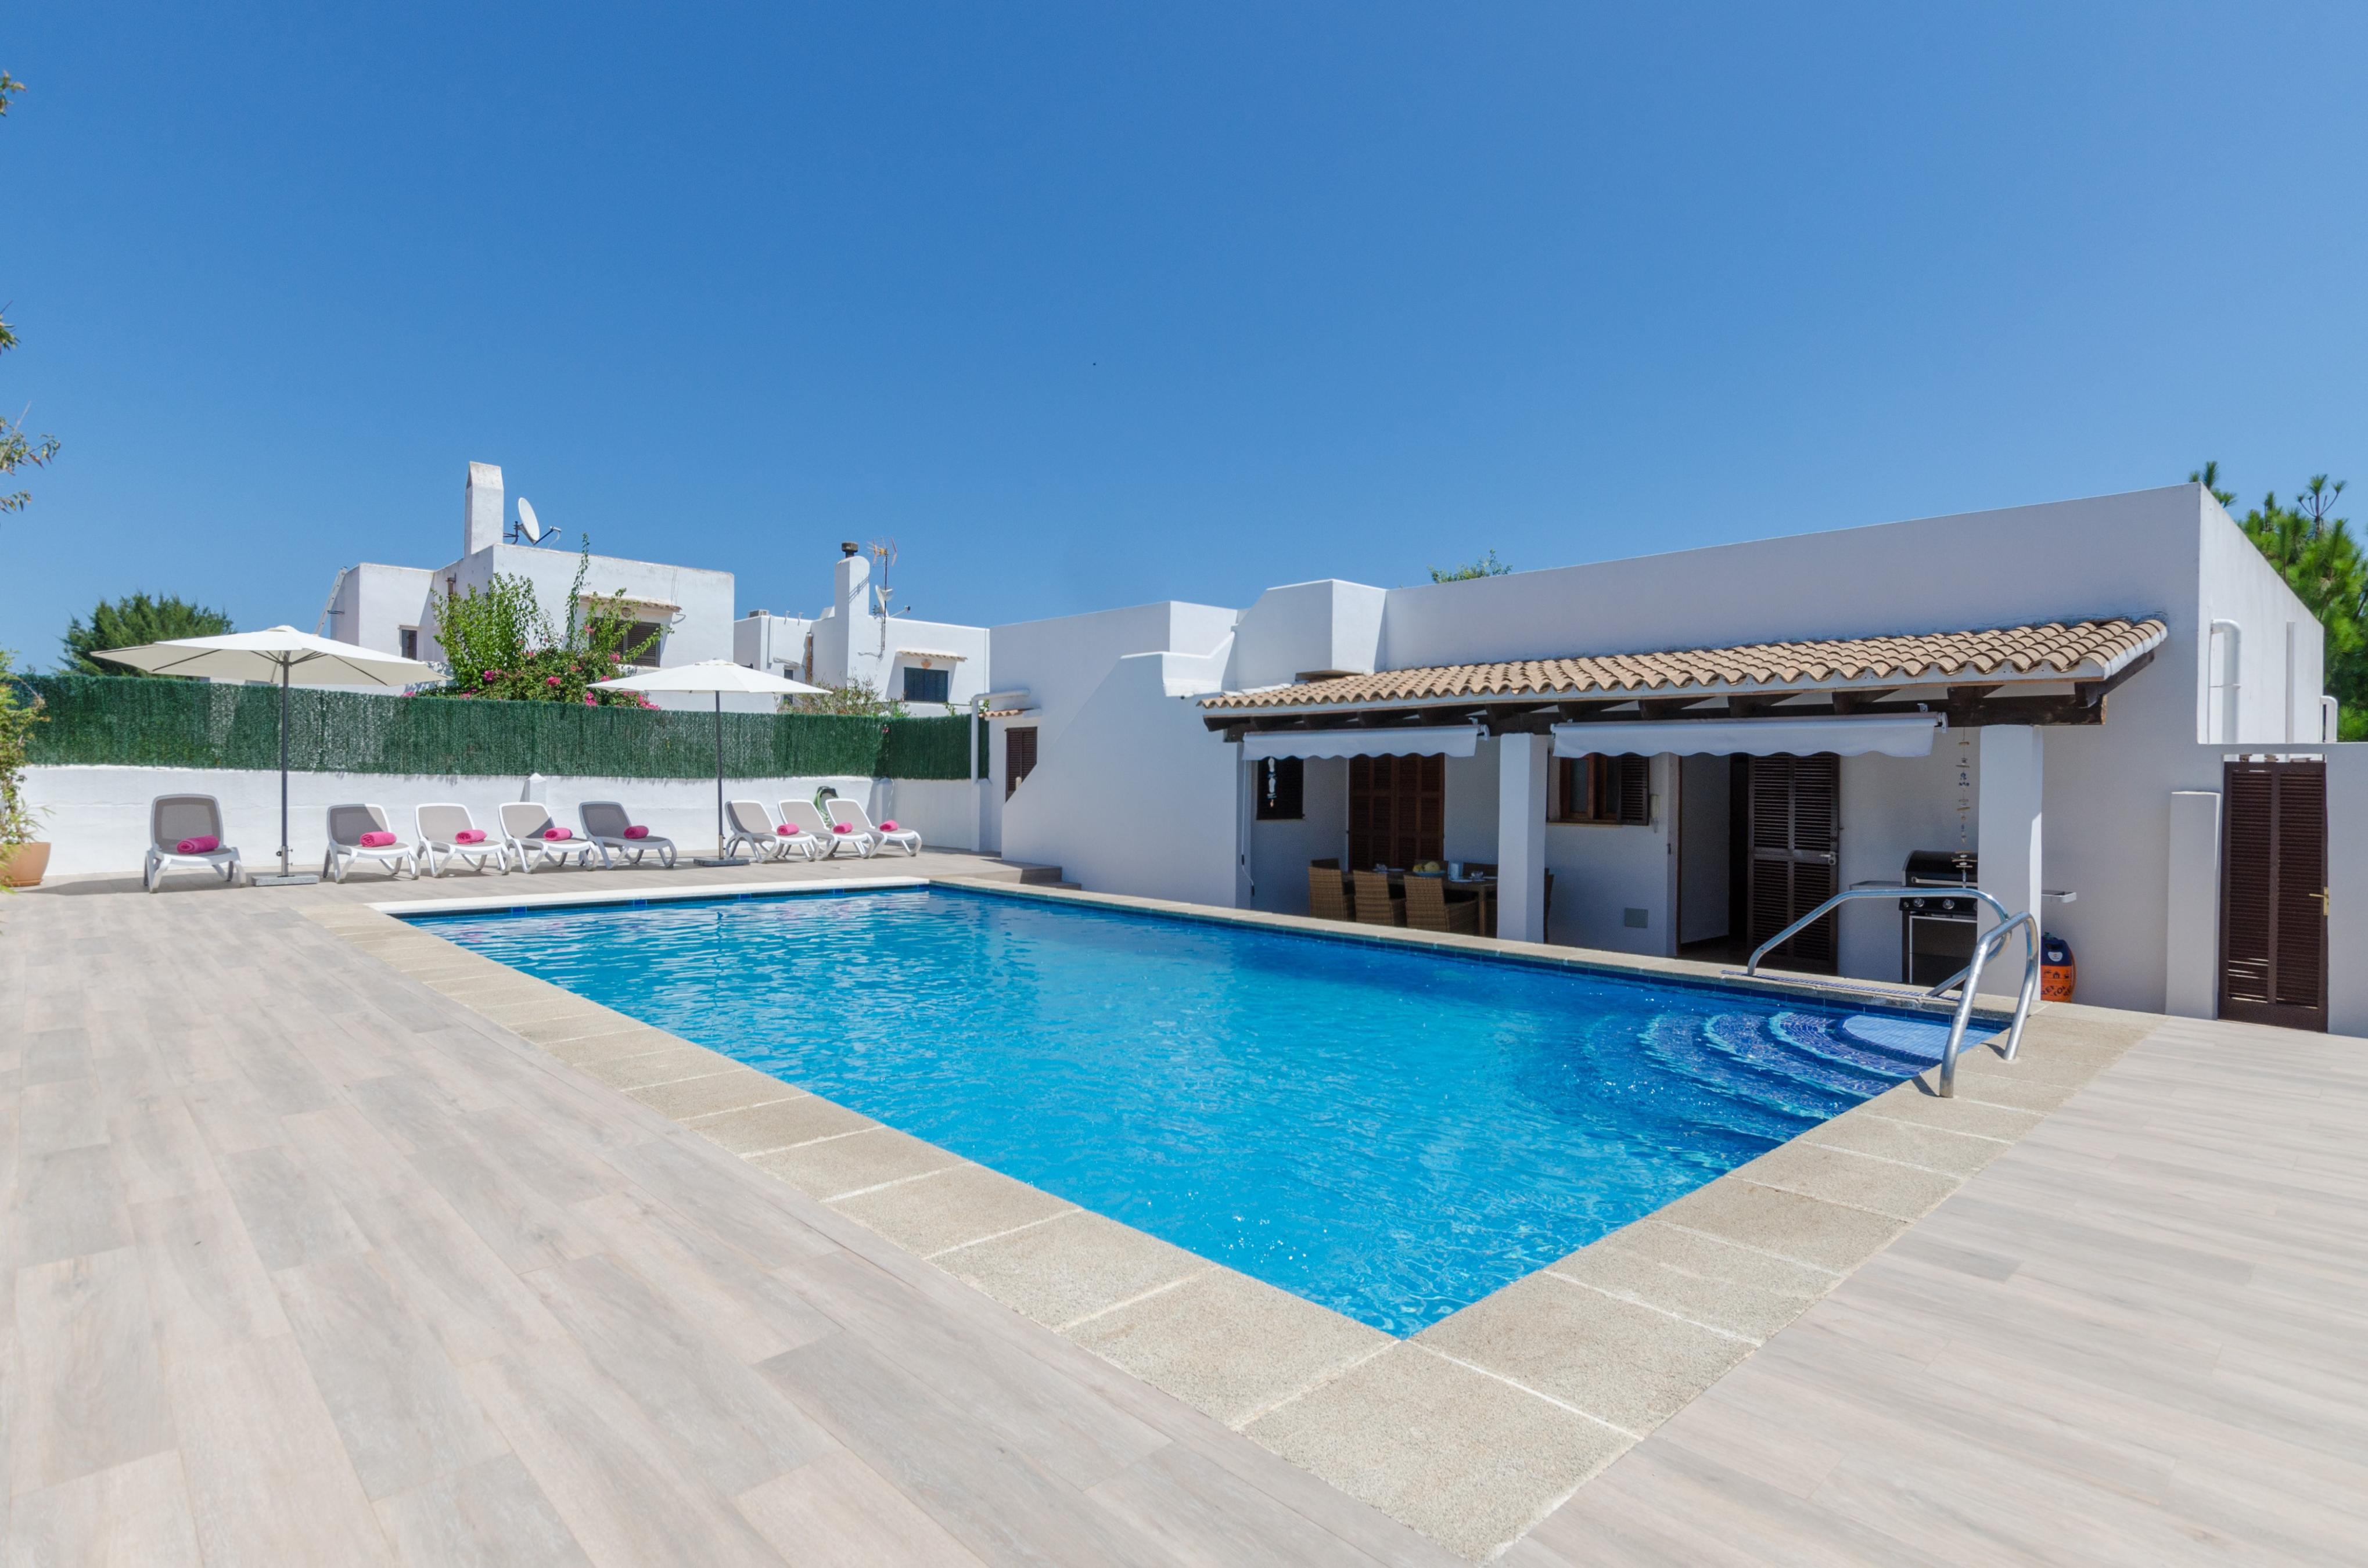 Property Image 1 - MURTA 26 - Villa with private pool in SA COMA. Free WiFi